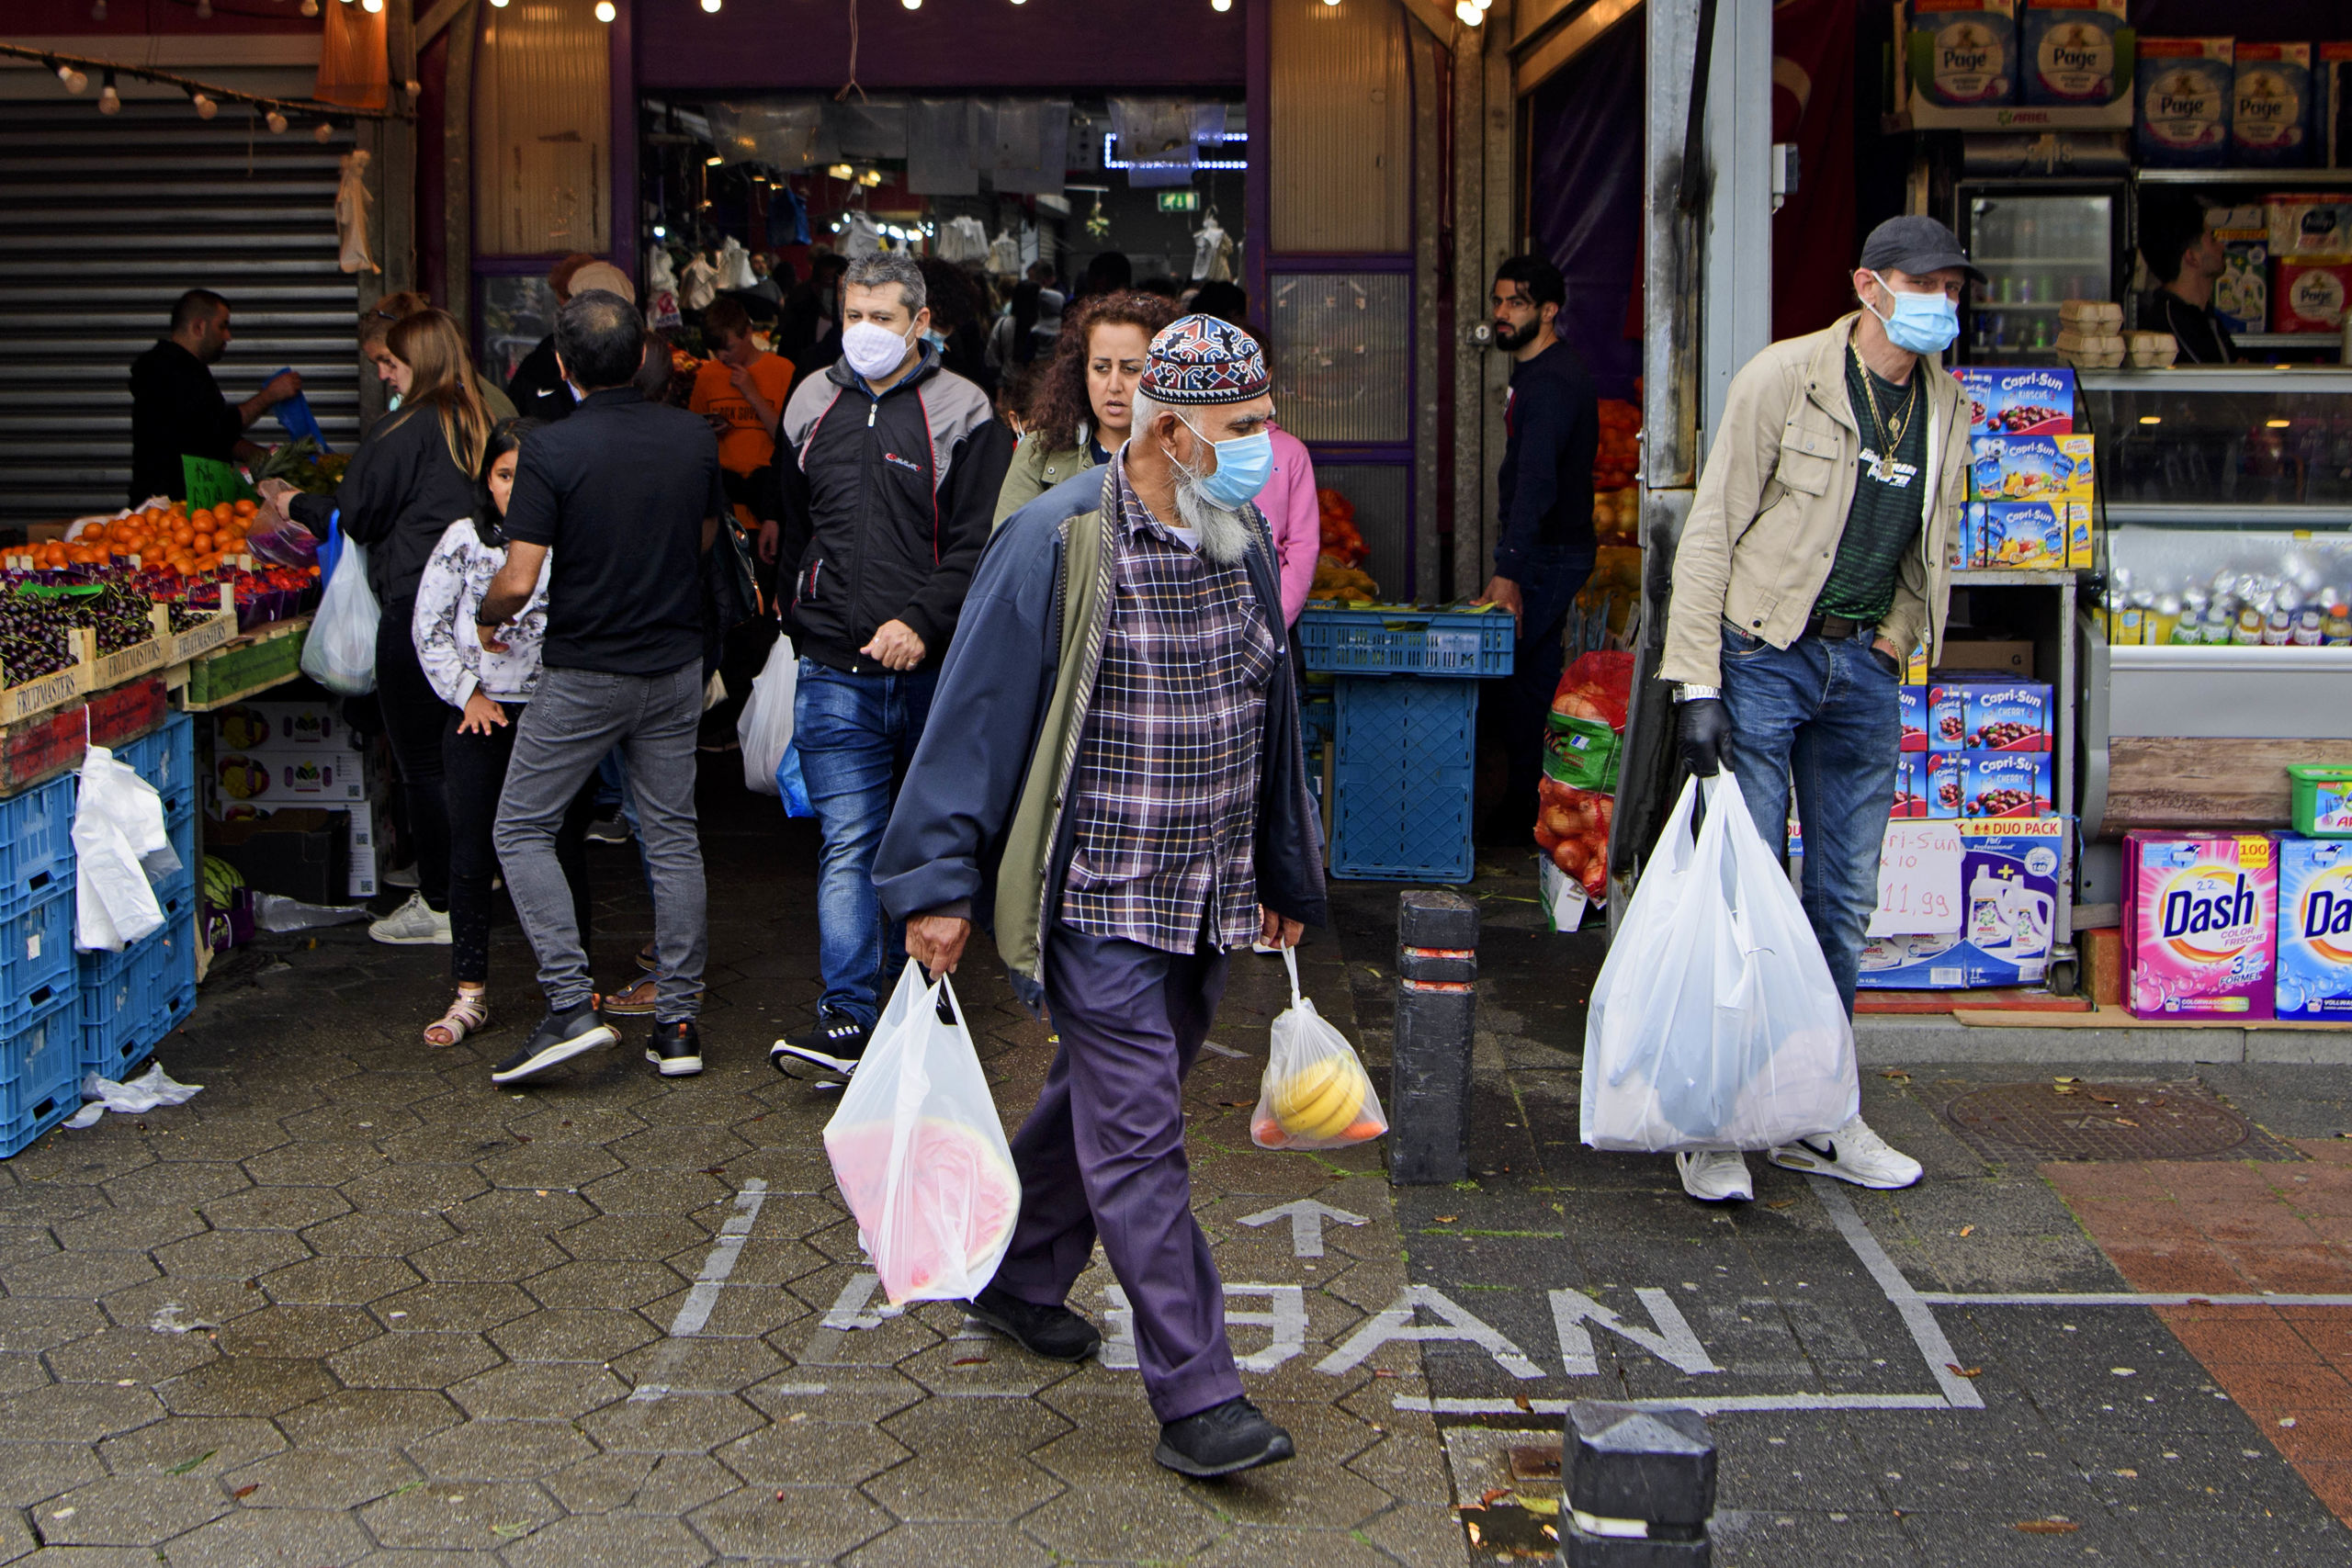 De meeste bezoekers van De Bazaar dragen mondkapjes. De markt vraagt alle bezoekers een mondkapje te dragen, als maatregel tegen het coronavirus.